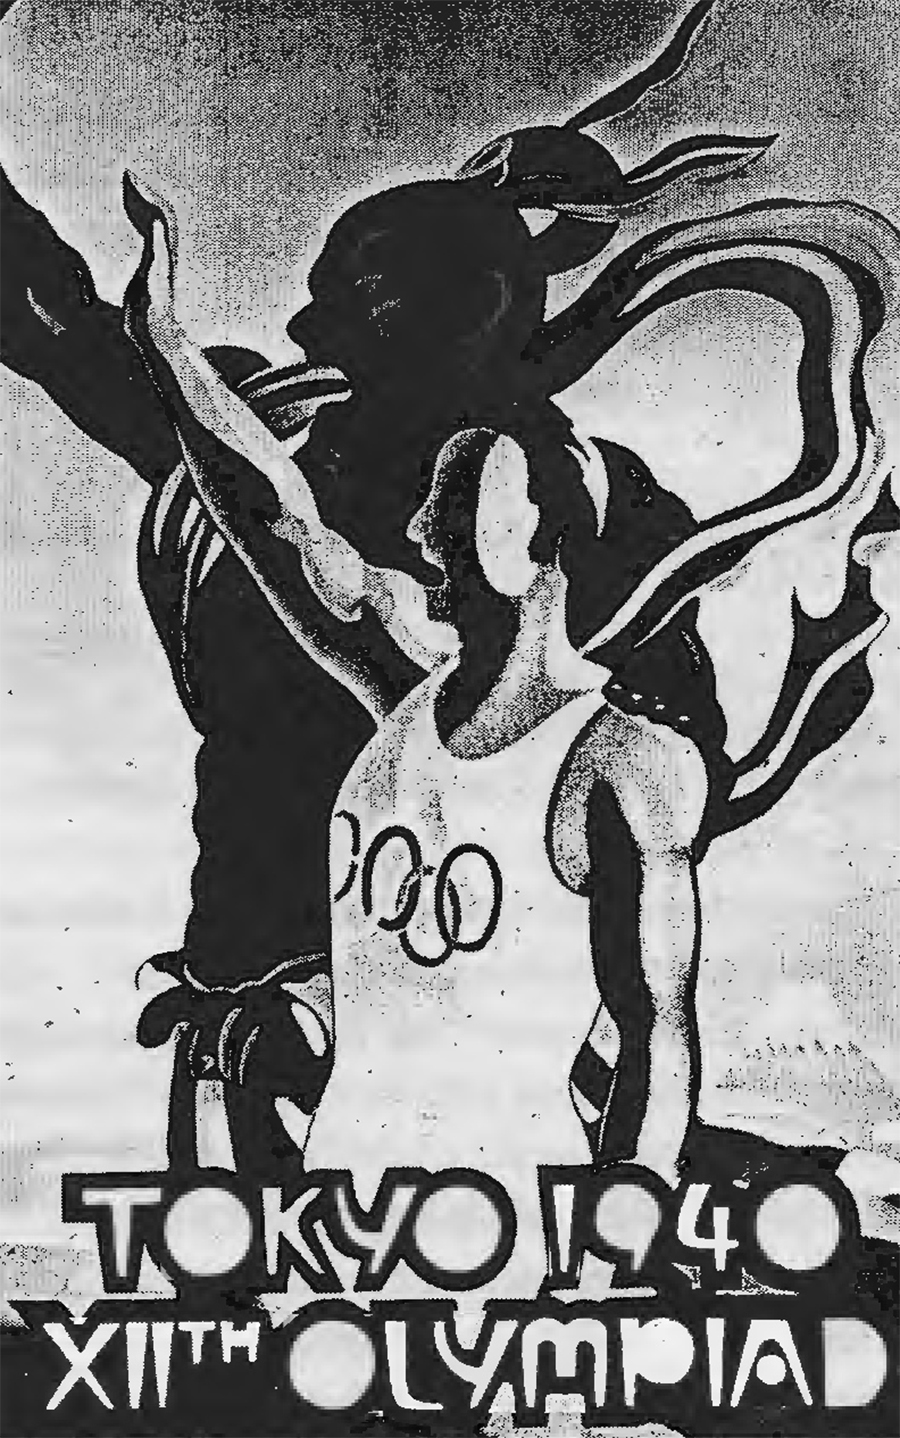 Câu chuyện lịch sử thể thao: Từng có 3 kỳ Olympic ma